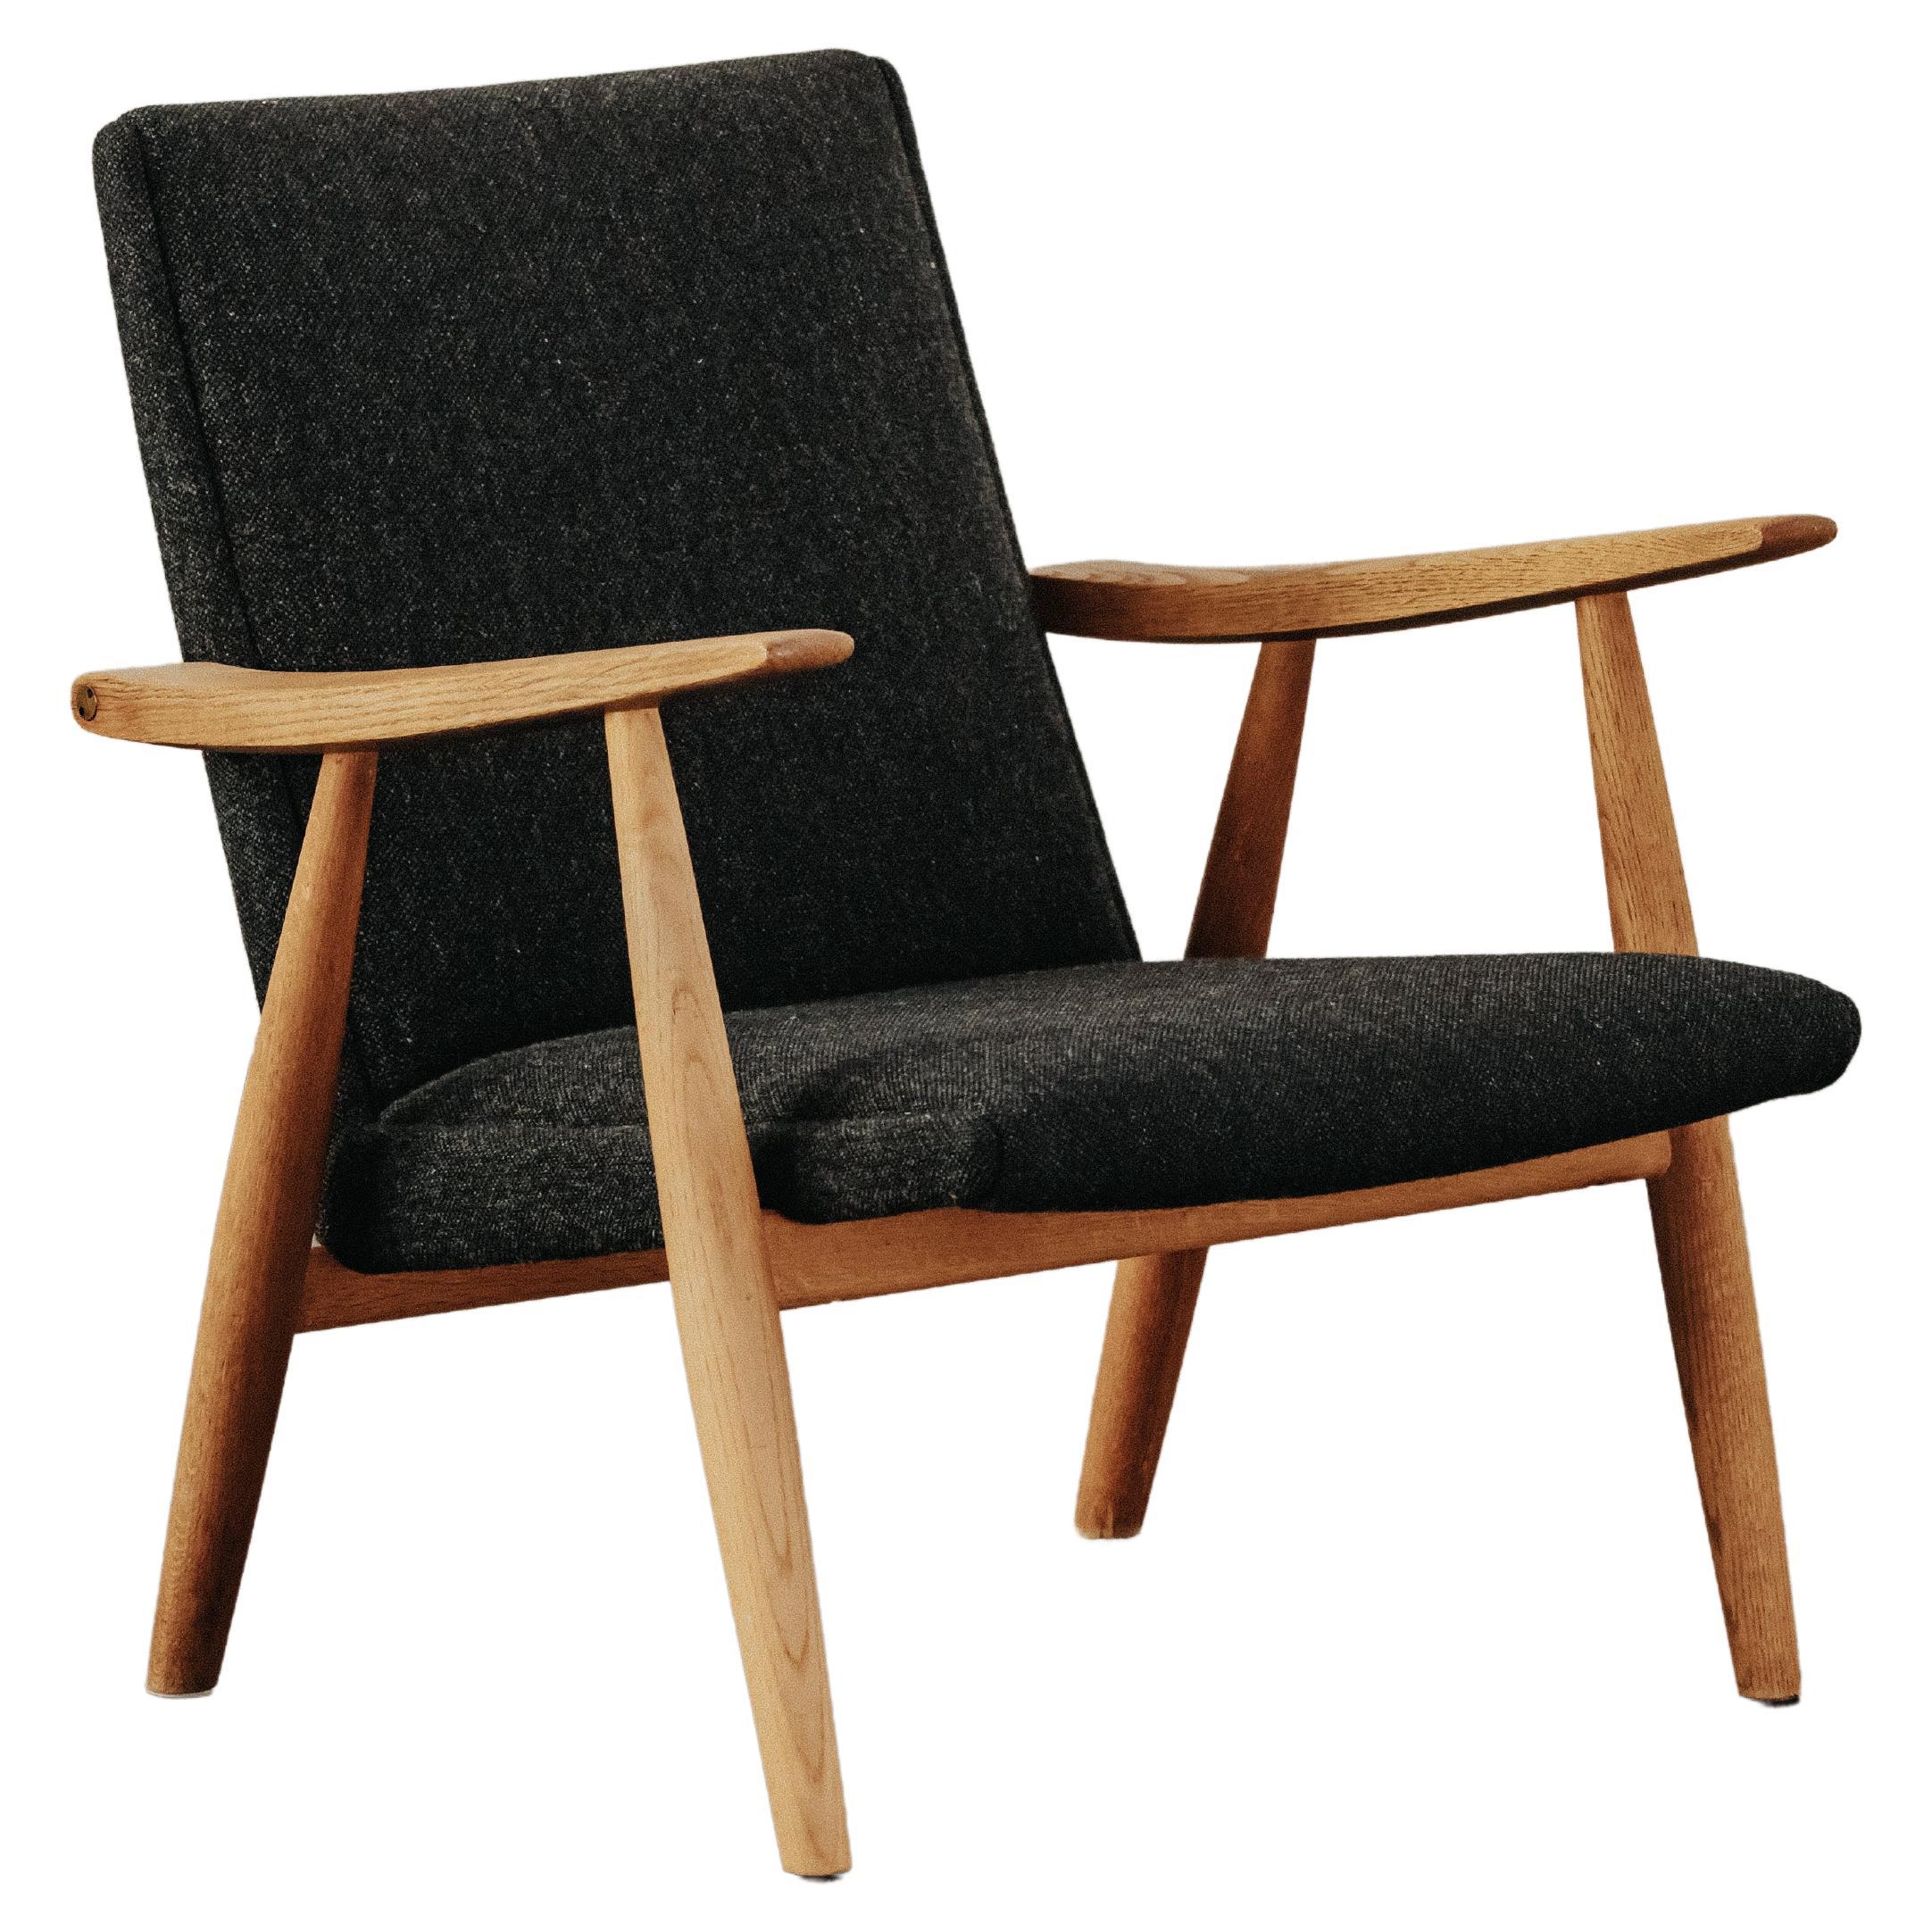 Vintage Oak Hans Wegner Lounge Chair, Model 260, from Denmark, circa 1960